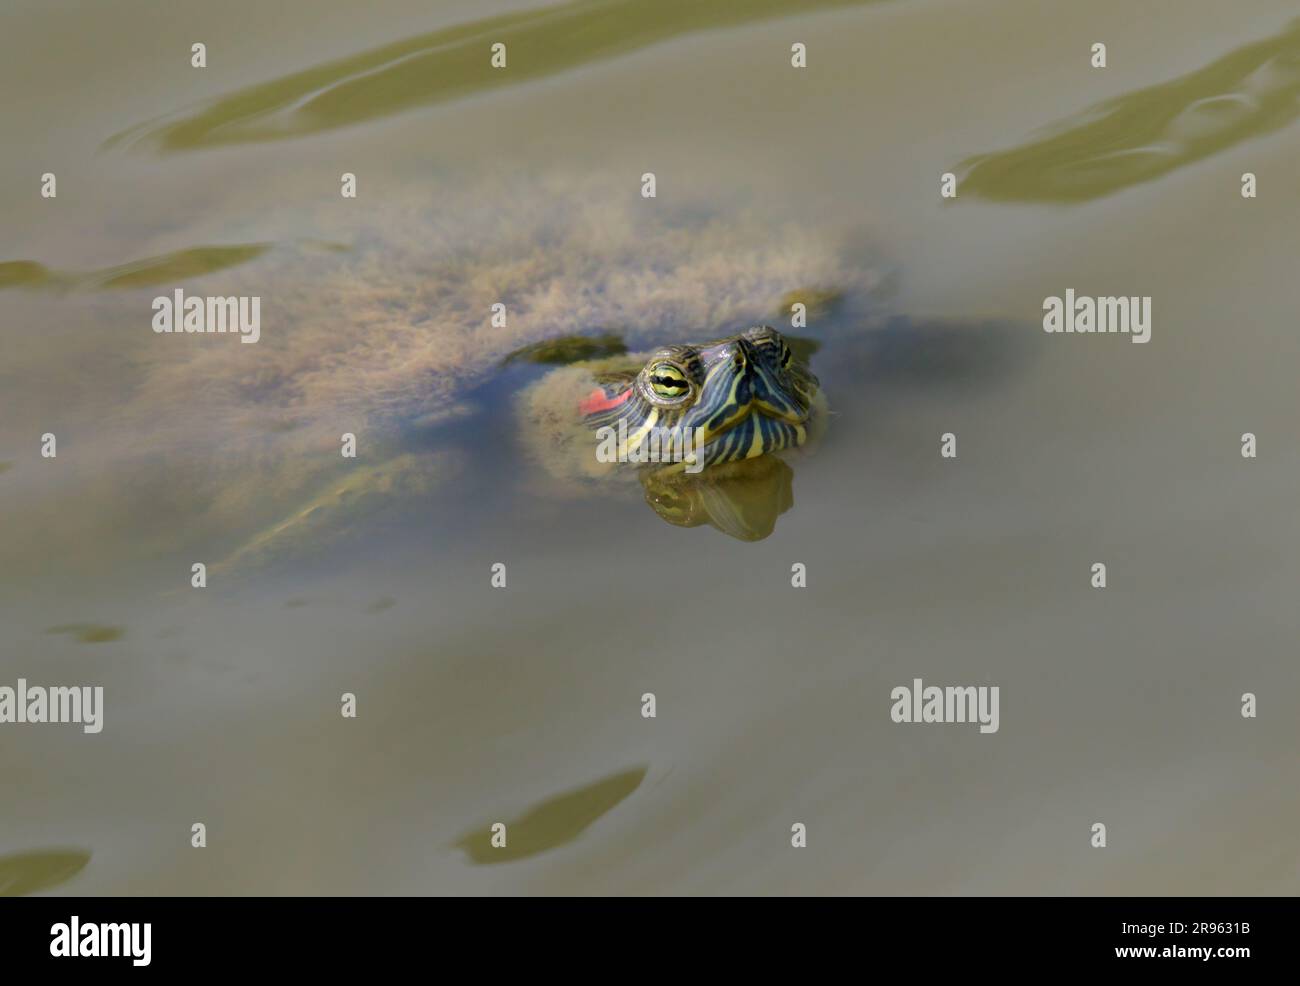 Ein alter Rotohr-Slider (Trachemys scripta elegans), dessen Muschel von Unkraut bedeckt ist, das aus dem Wasser eines Sees in Houston, Texas, USA, erblickt. Stockfoto